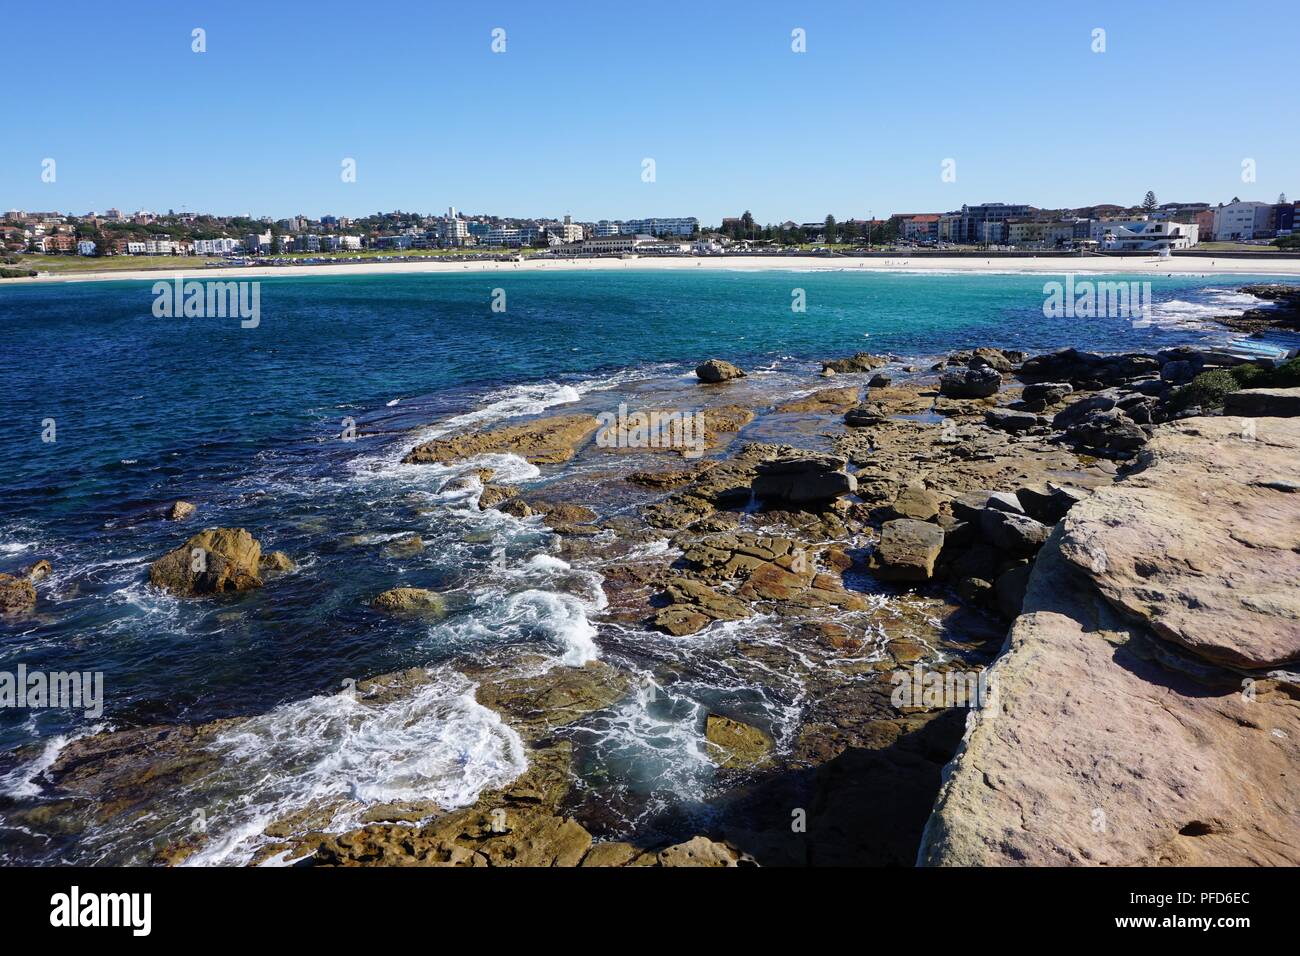 View from a Rocky Shore towards Bondi Beach, Australia Stock Photo